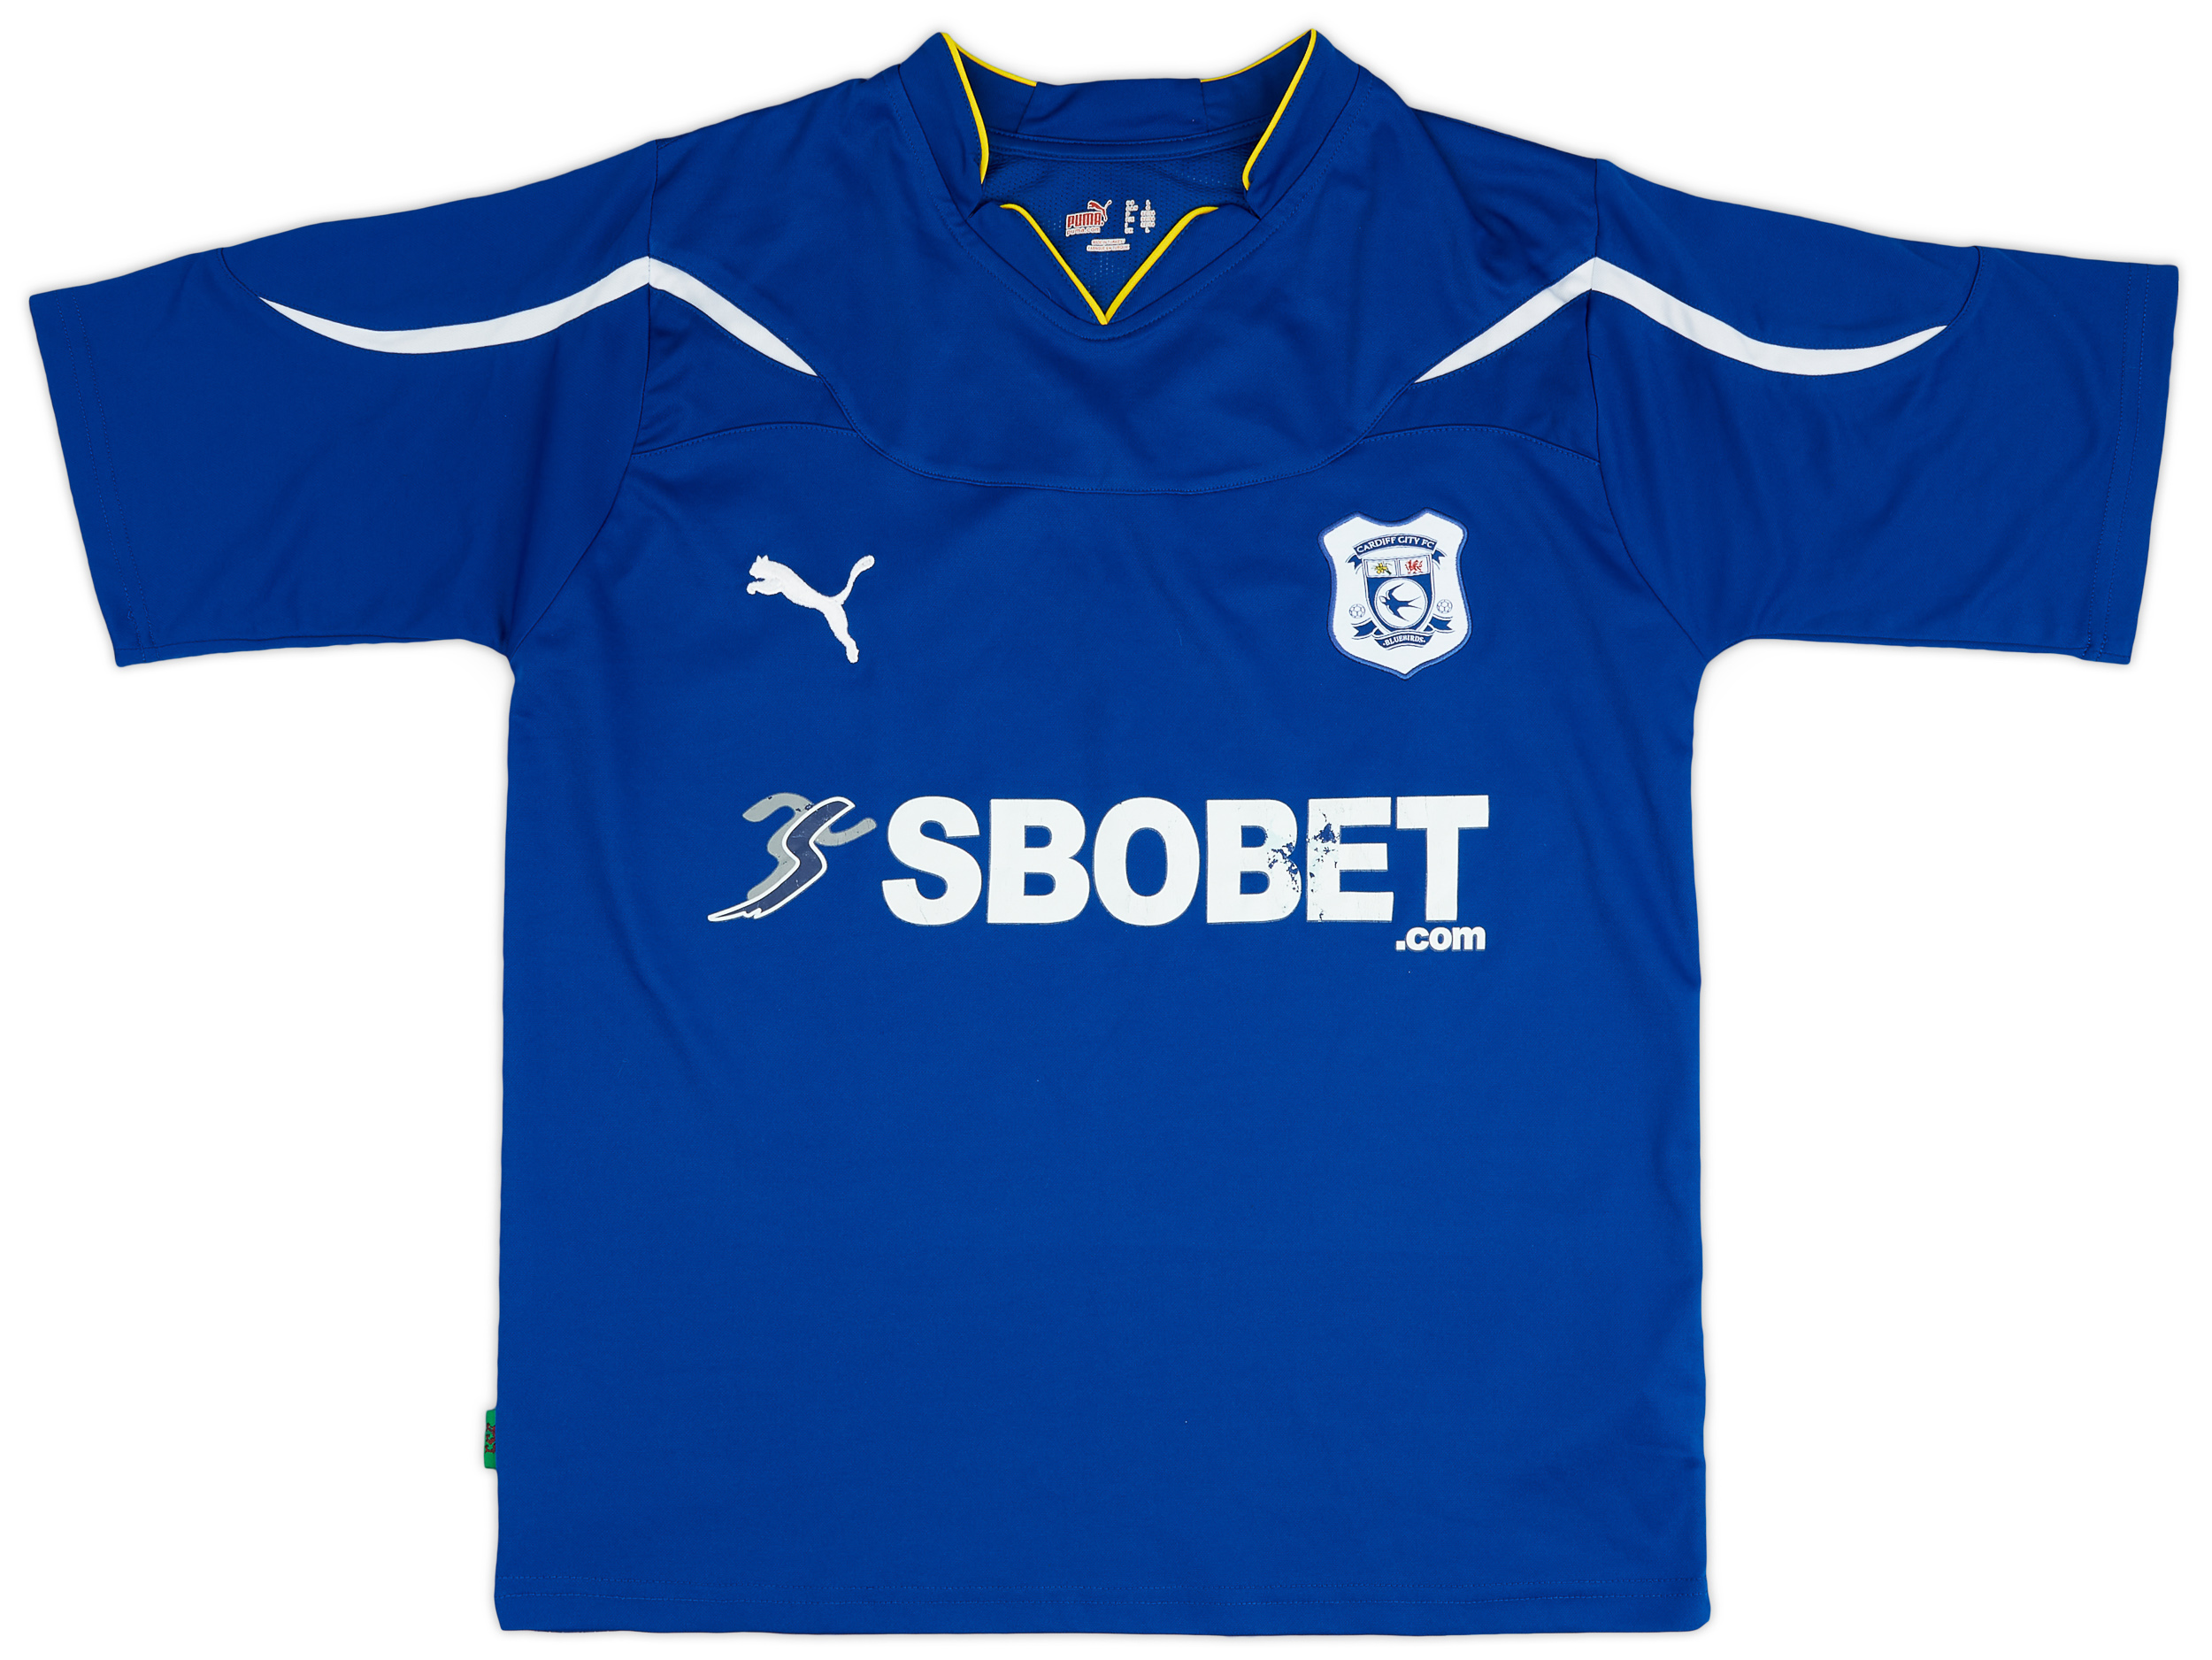 Cardiff City  home Shirt (Original)